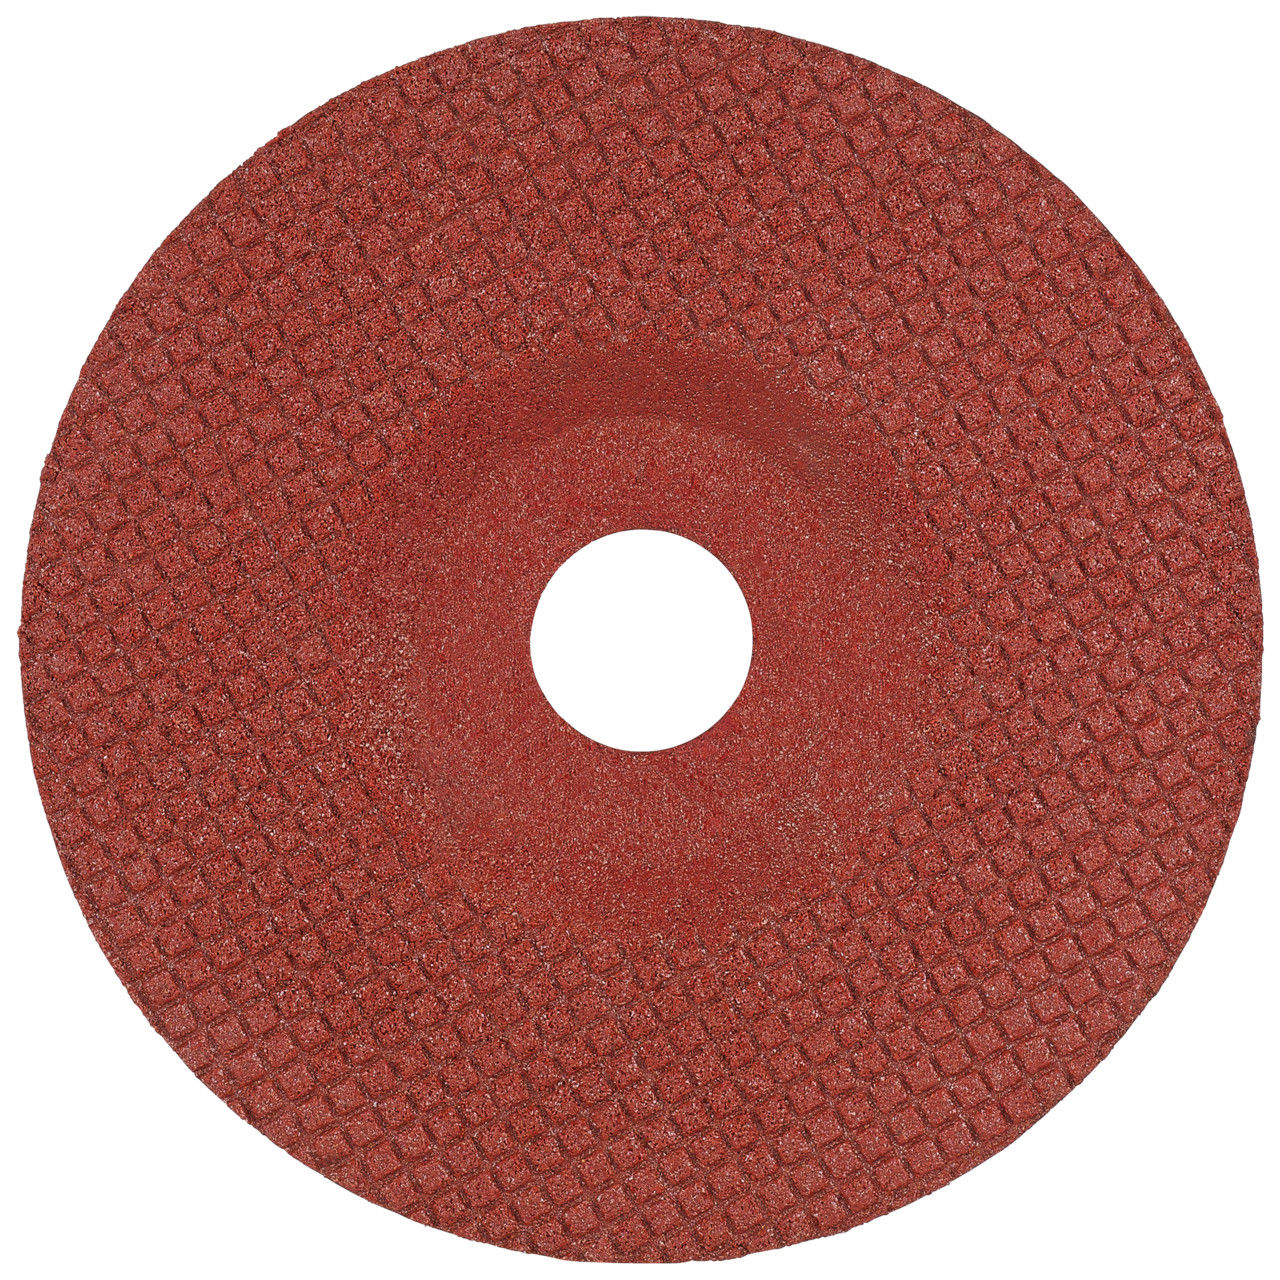 TYROLIT slijpschijf DxH 115x22.23 TOUCH voor roestvrij staal en non-ferrometalen, vorm: 29T - offset-uitvoering, Art. 236318